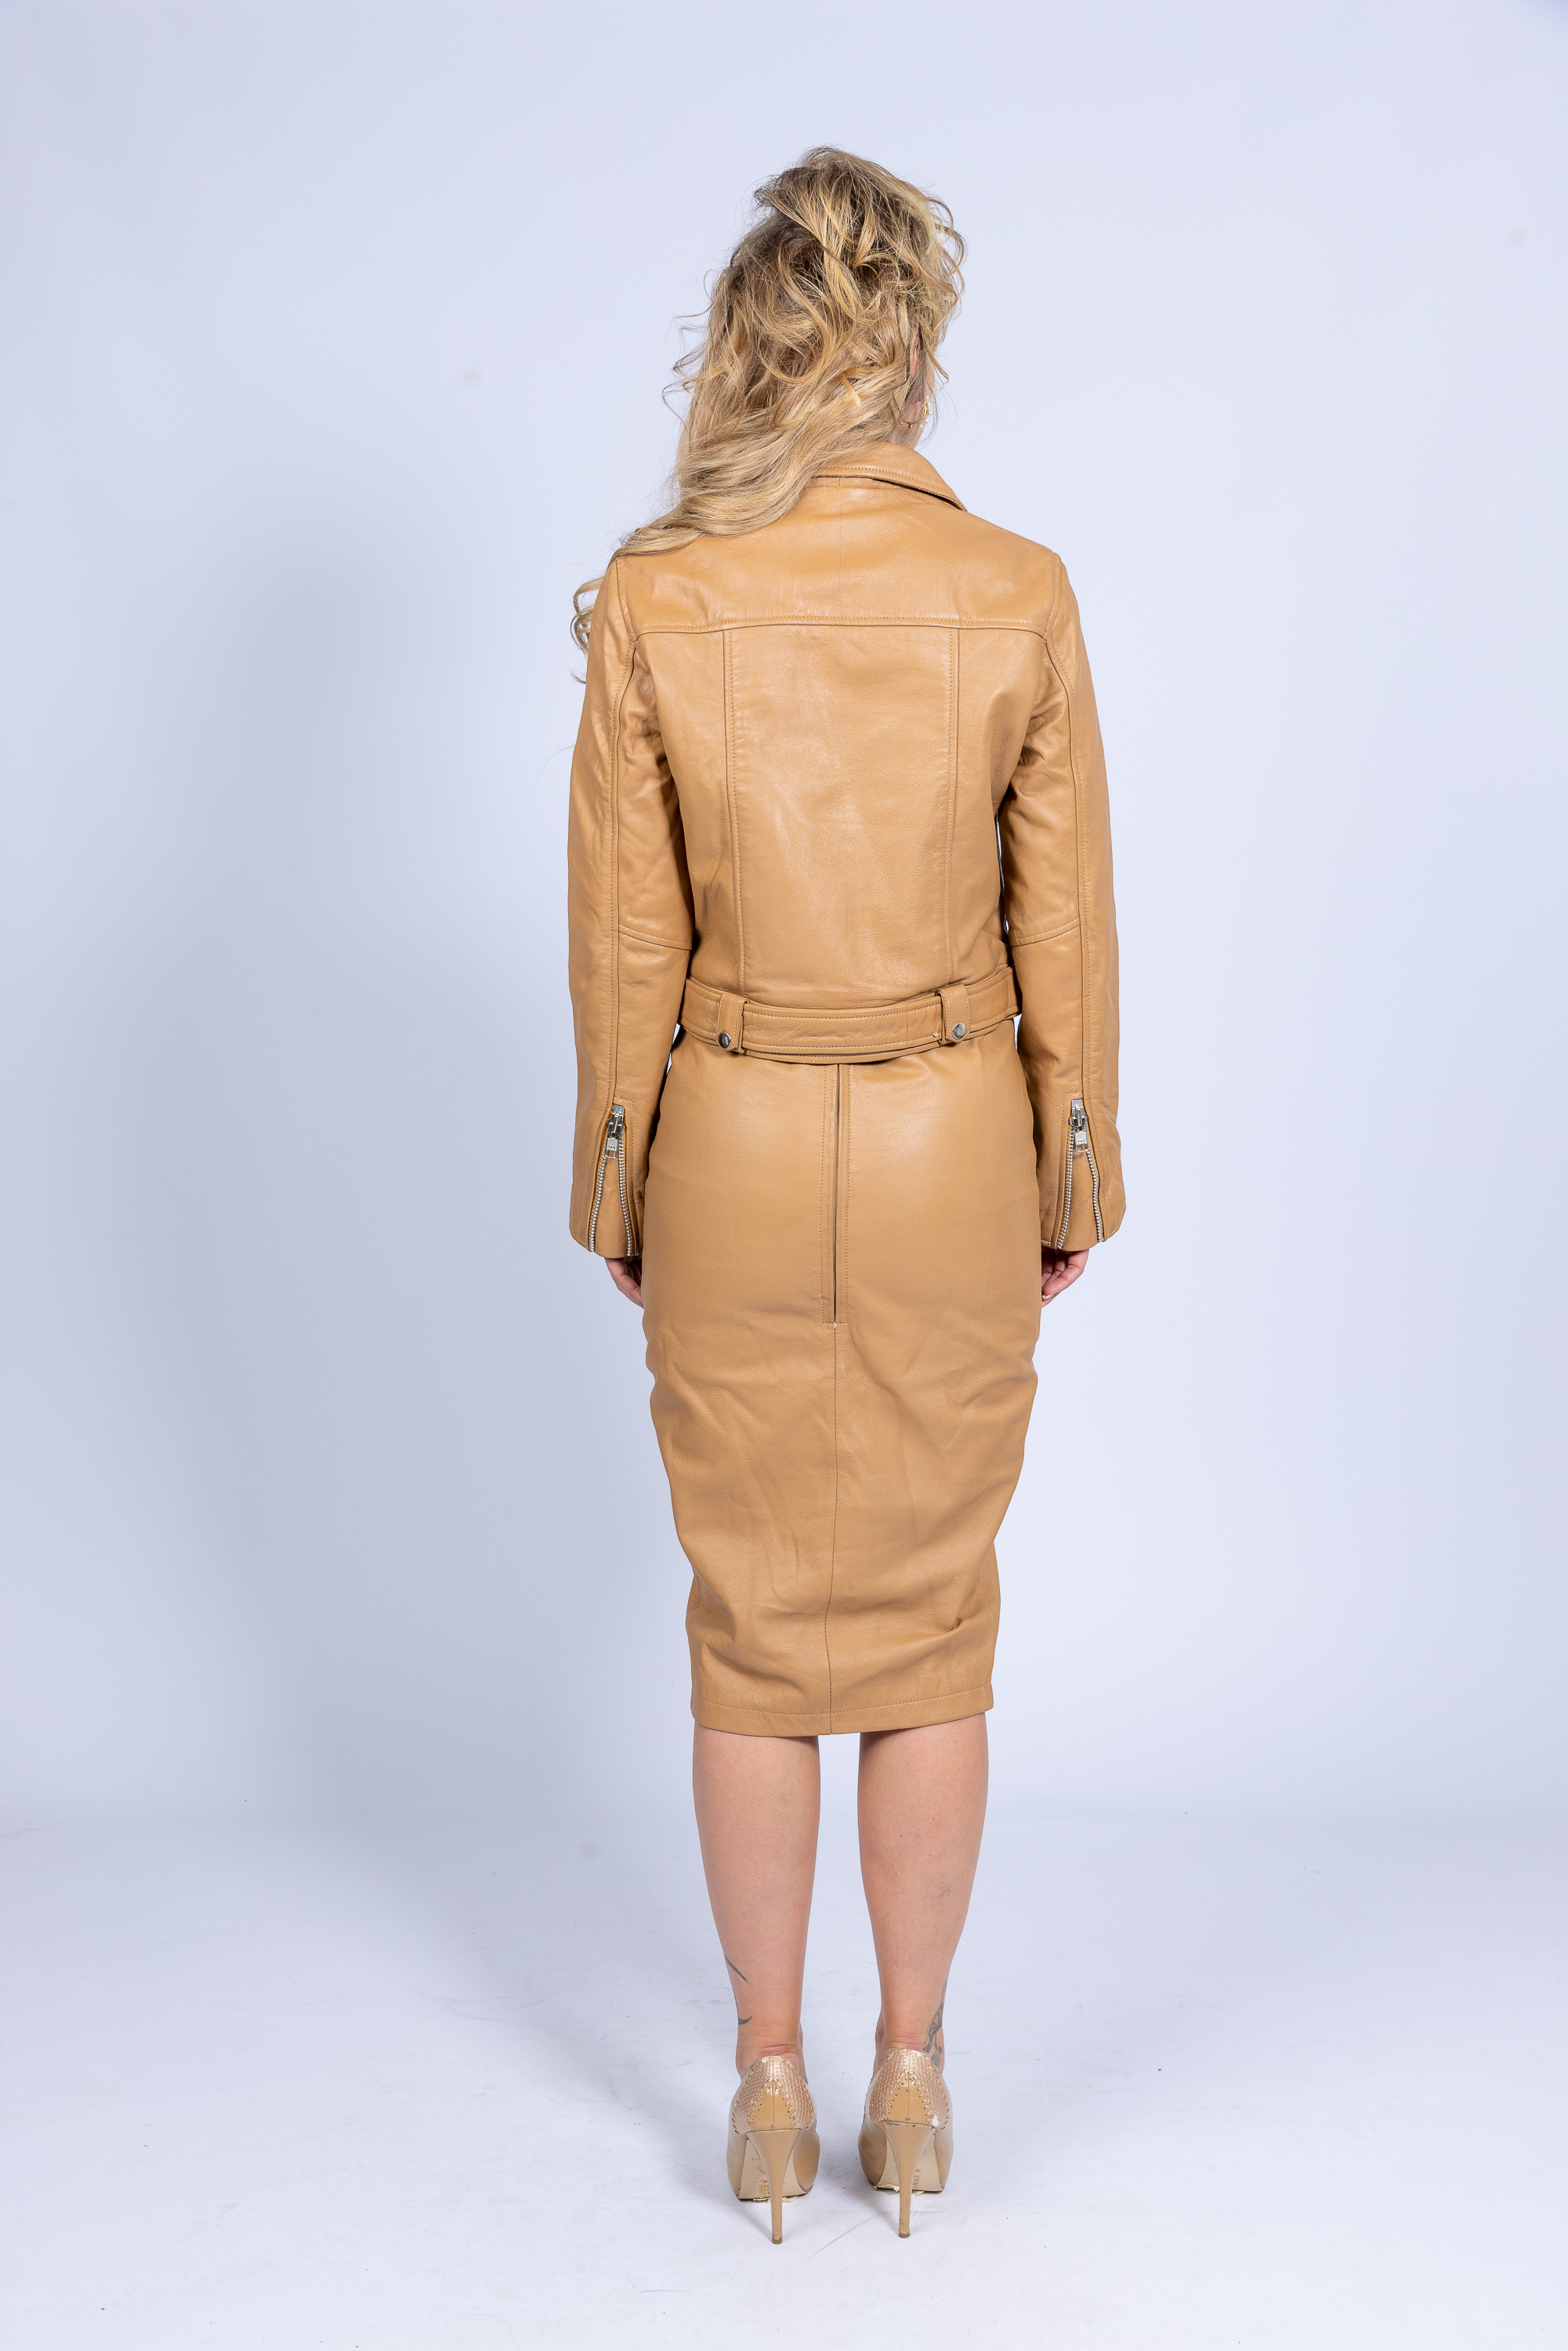 Falda de cuero, falda lápiz de cuero genuino en elegante color marrón beige